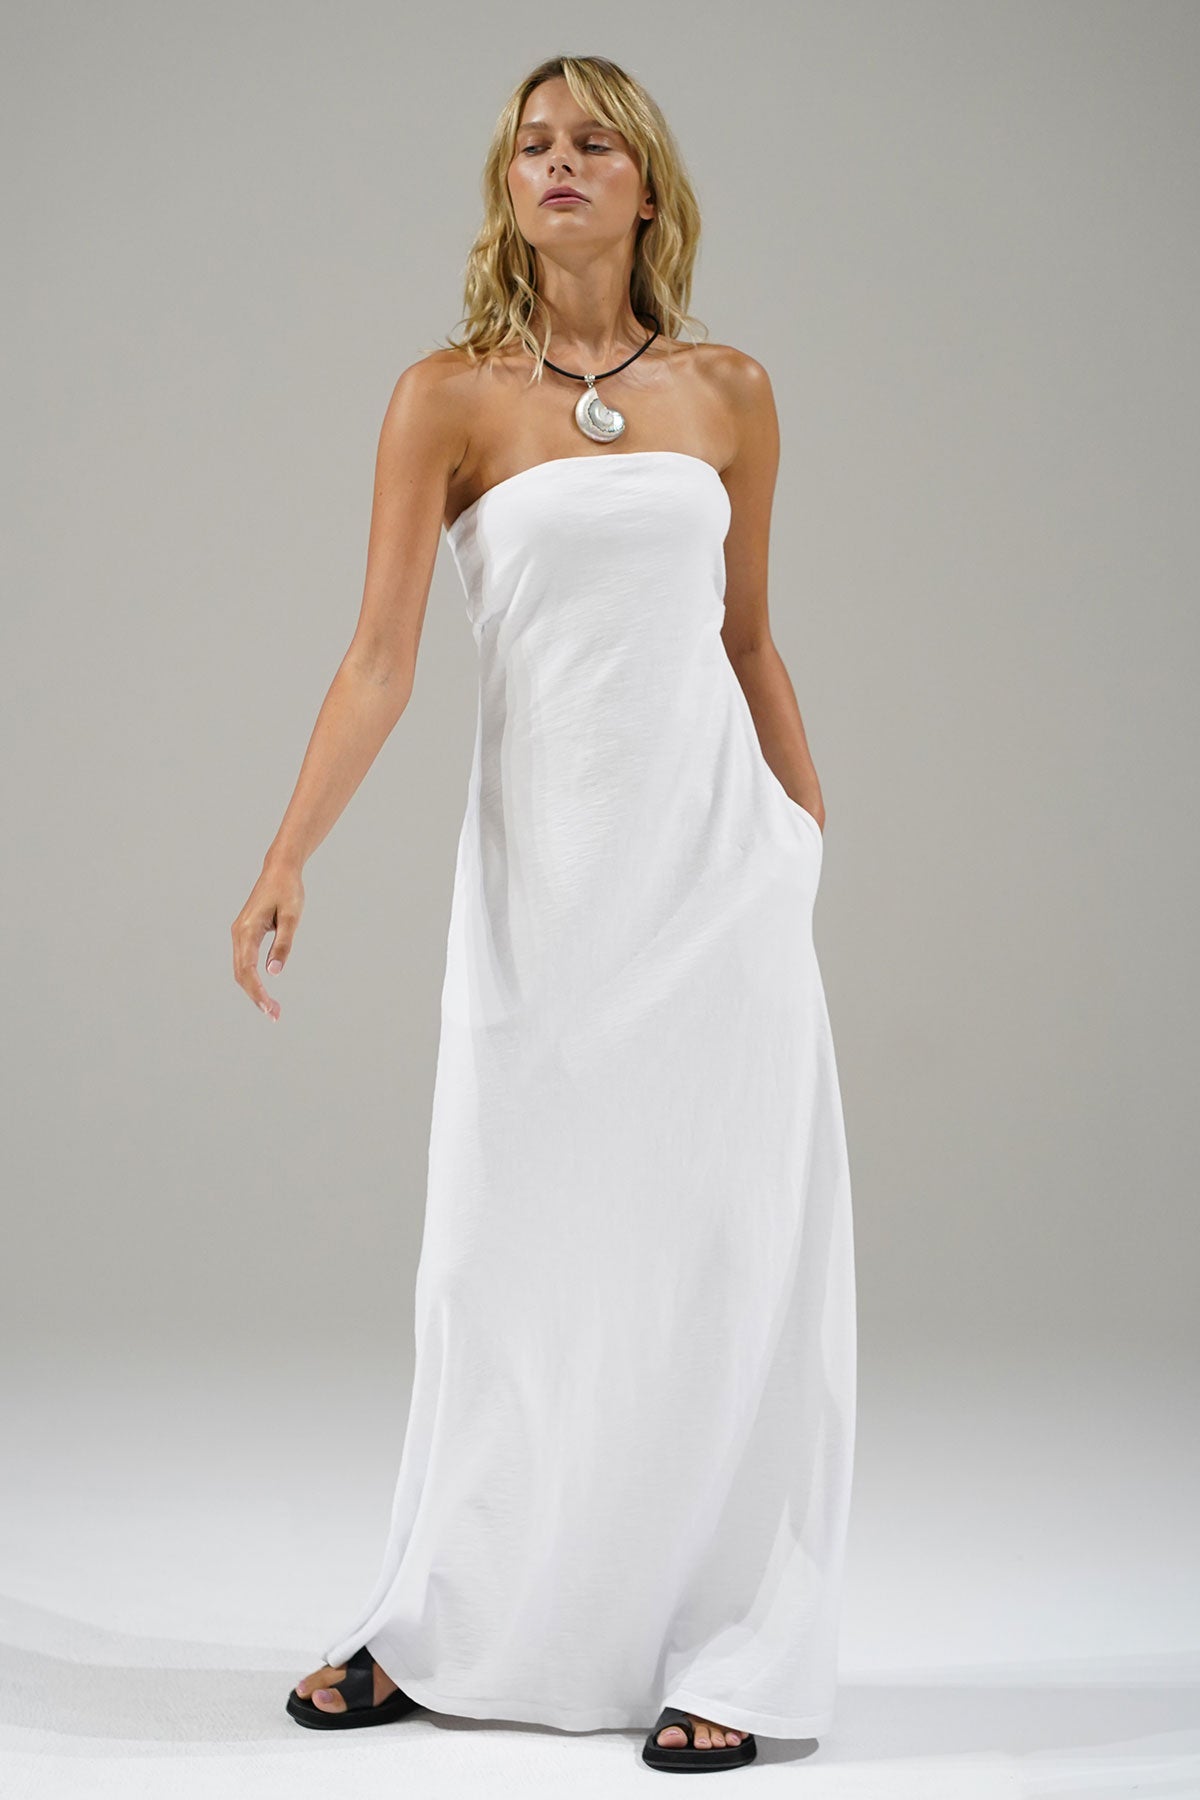 LNA Topanga Strapless Dress in White